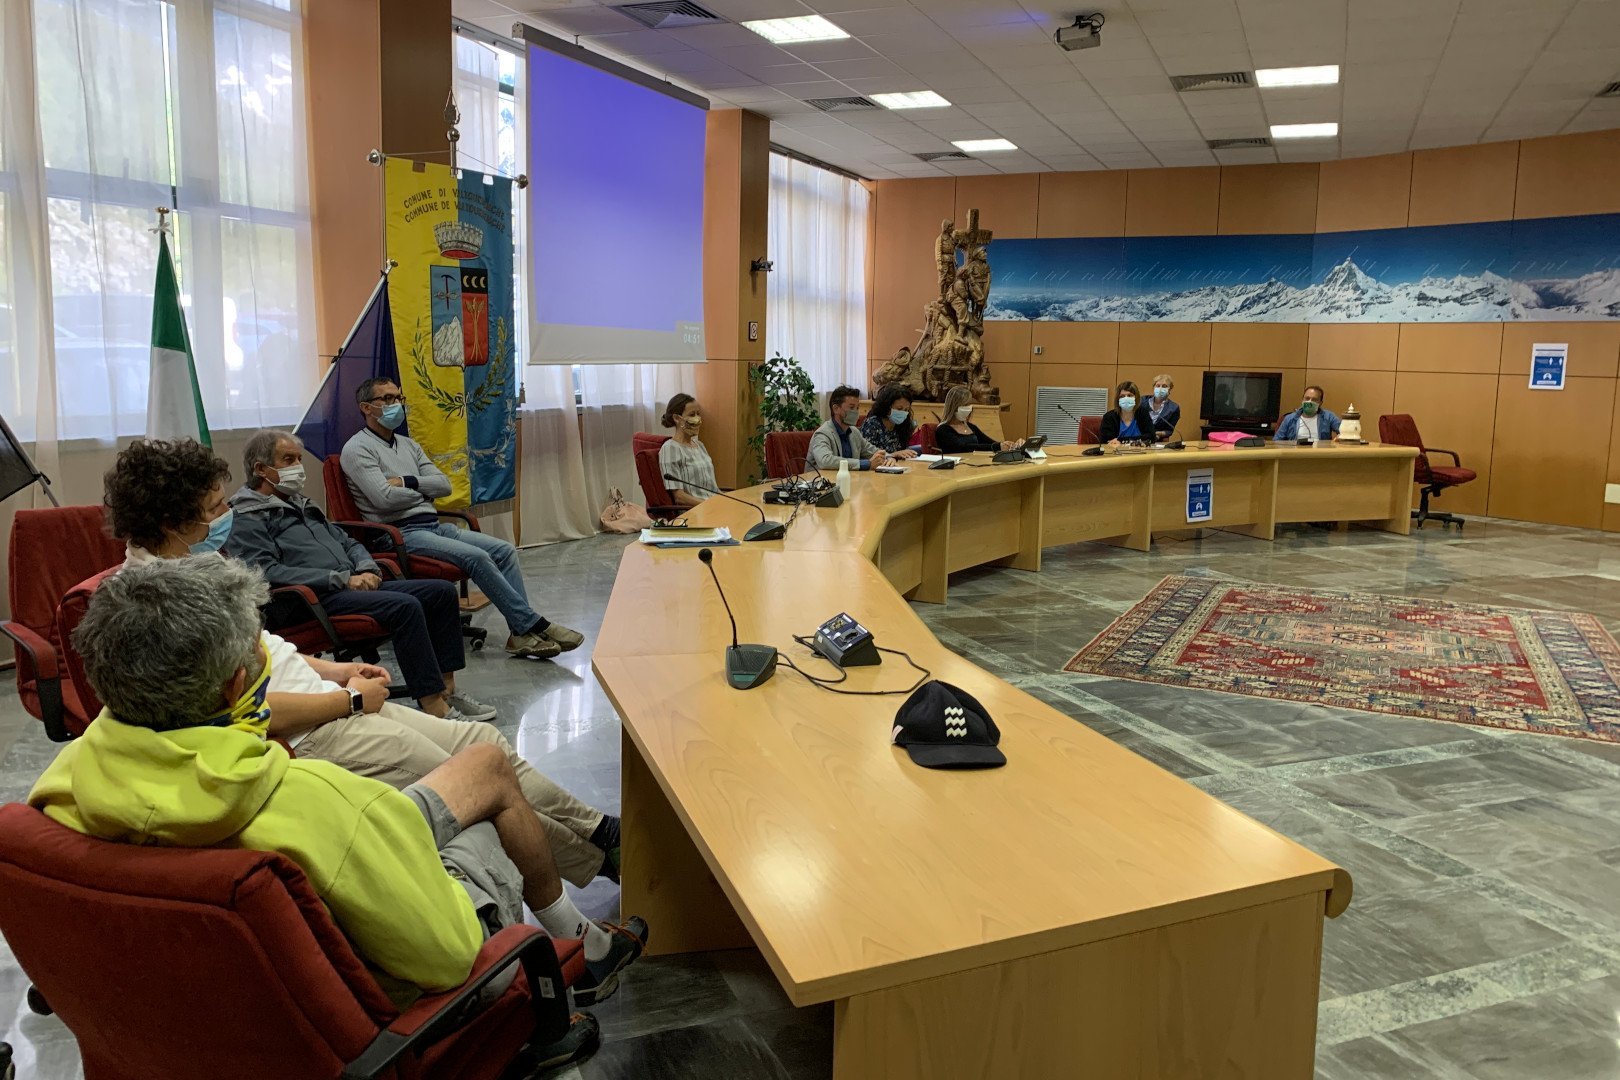 La riunione del Consiglio comunale di Valtournenche del 21 luglio 2020